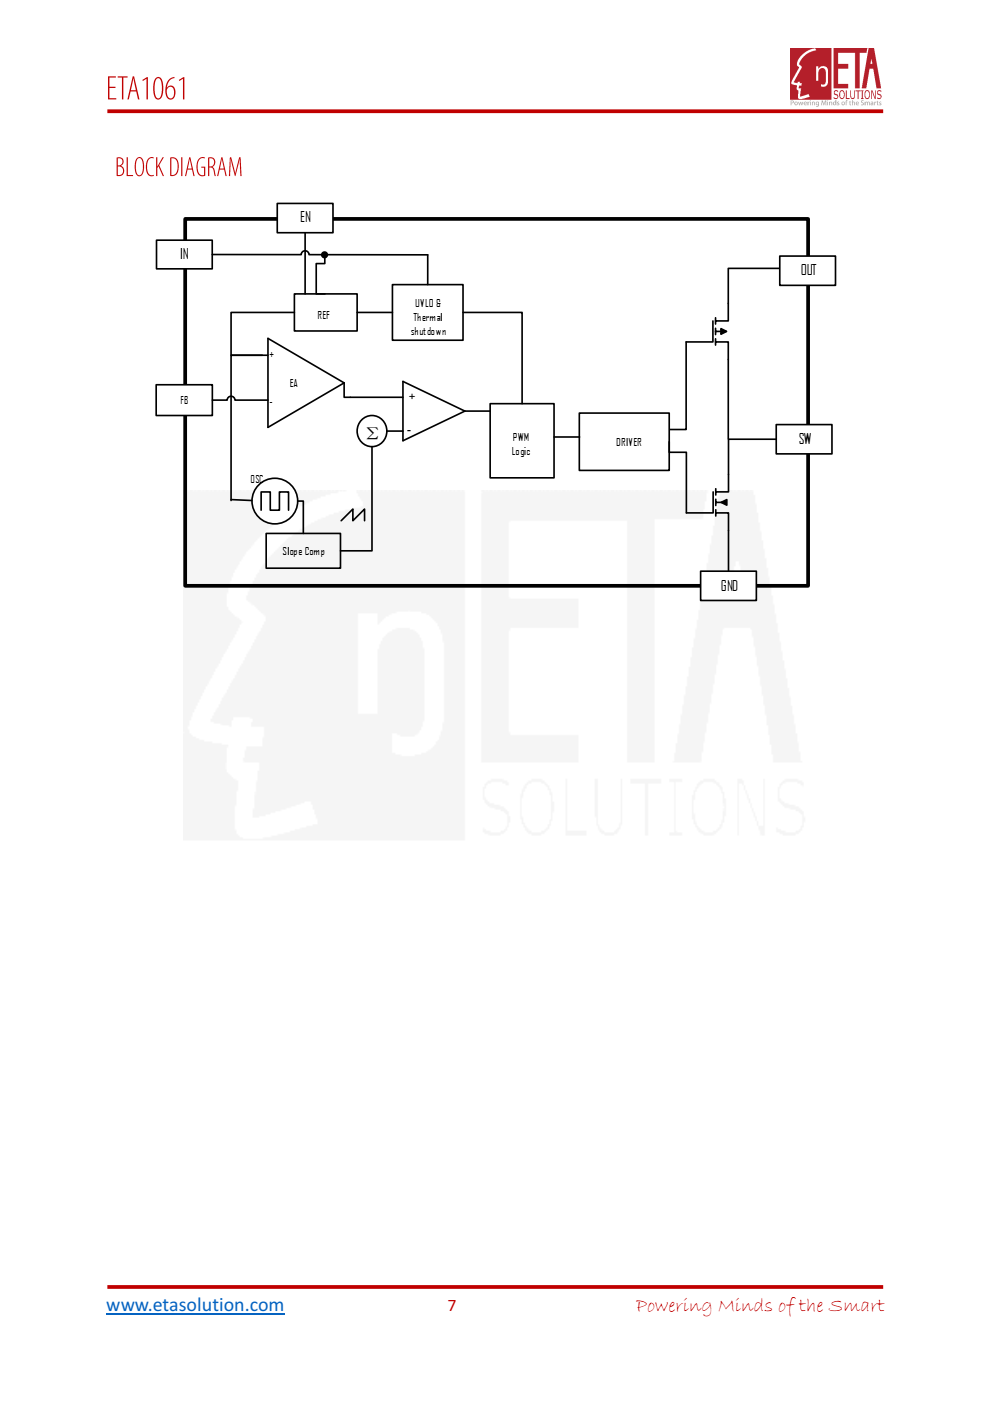 ETA1061是一种高效的同步升压转换器，具有超低的静态电流，低至PA